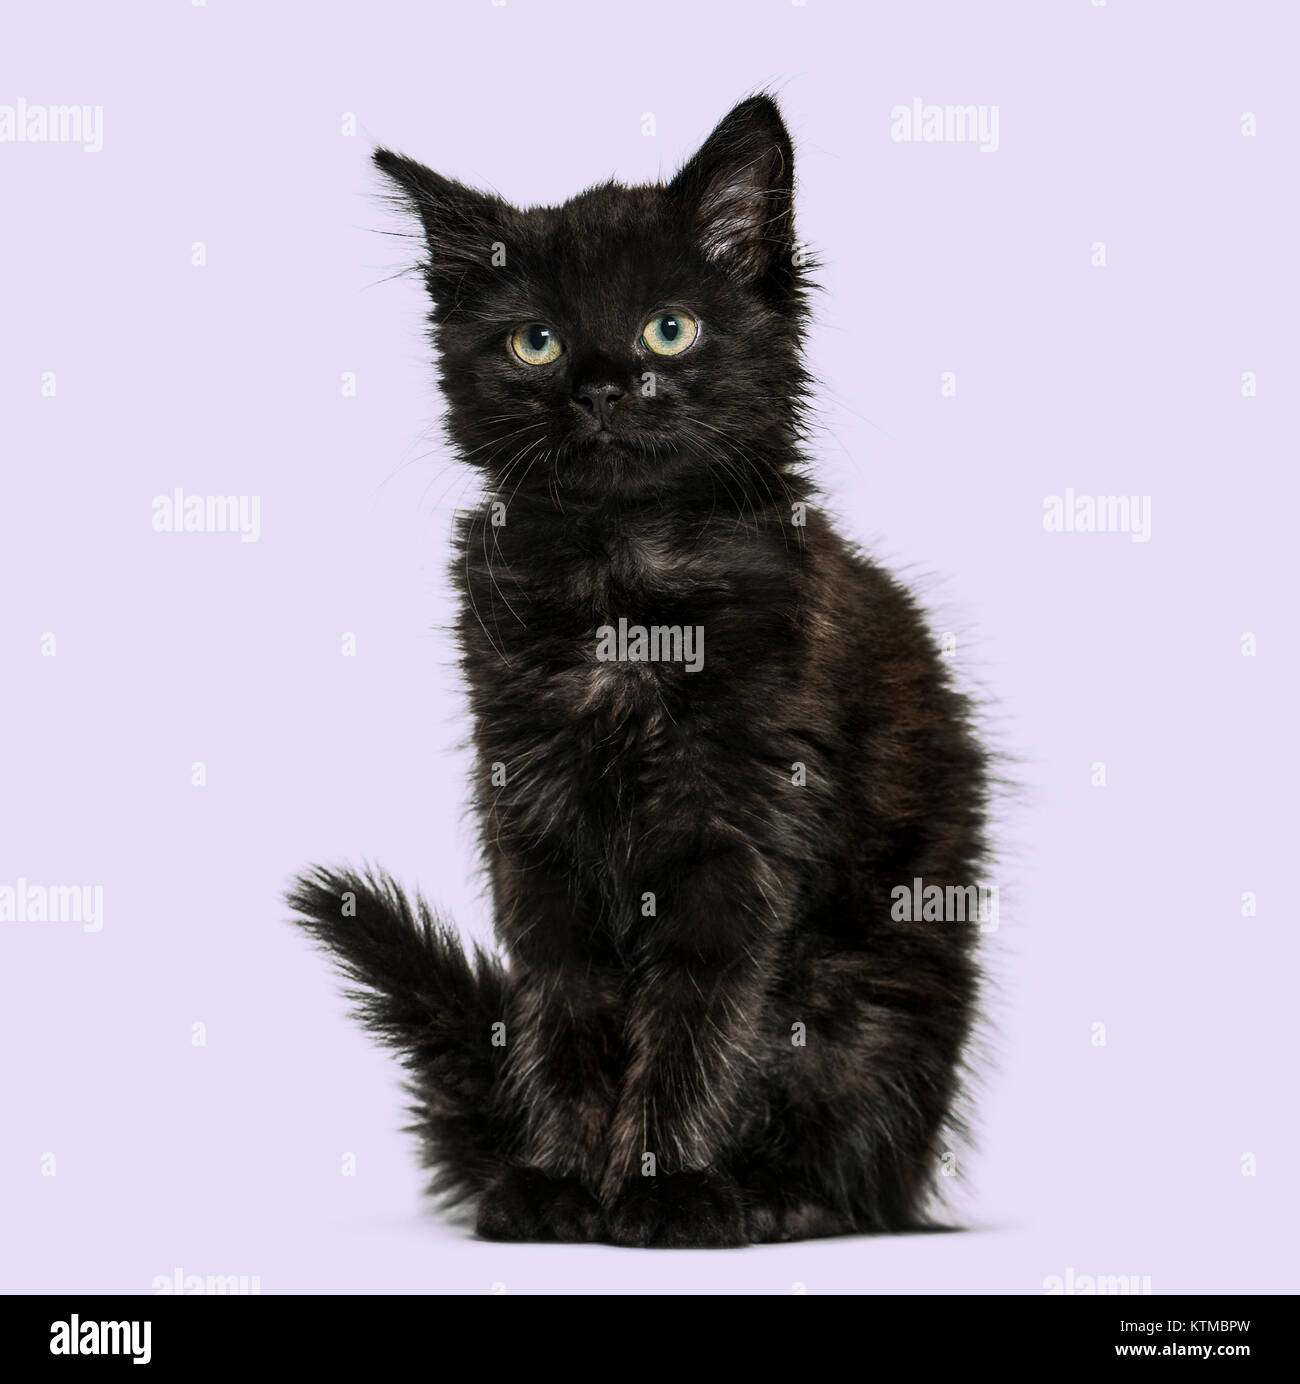 Black cat kitten, on purple background Stock Photo